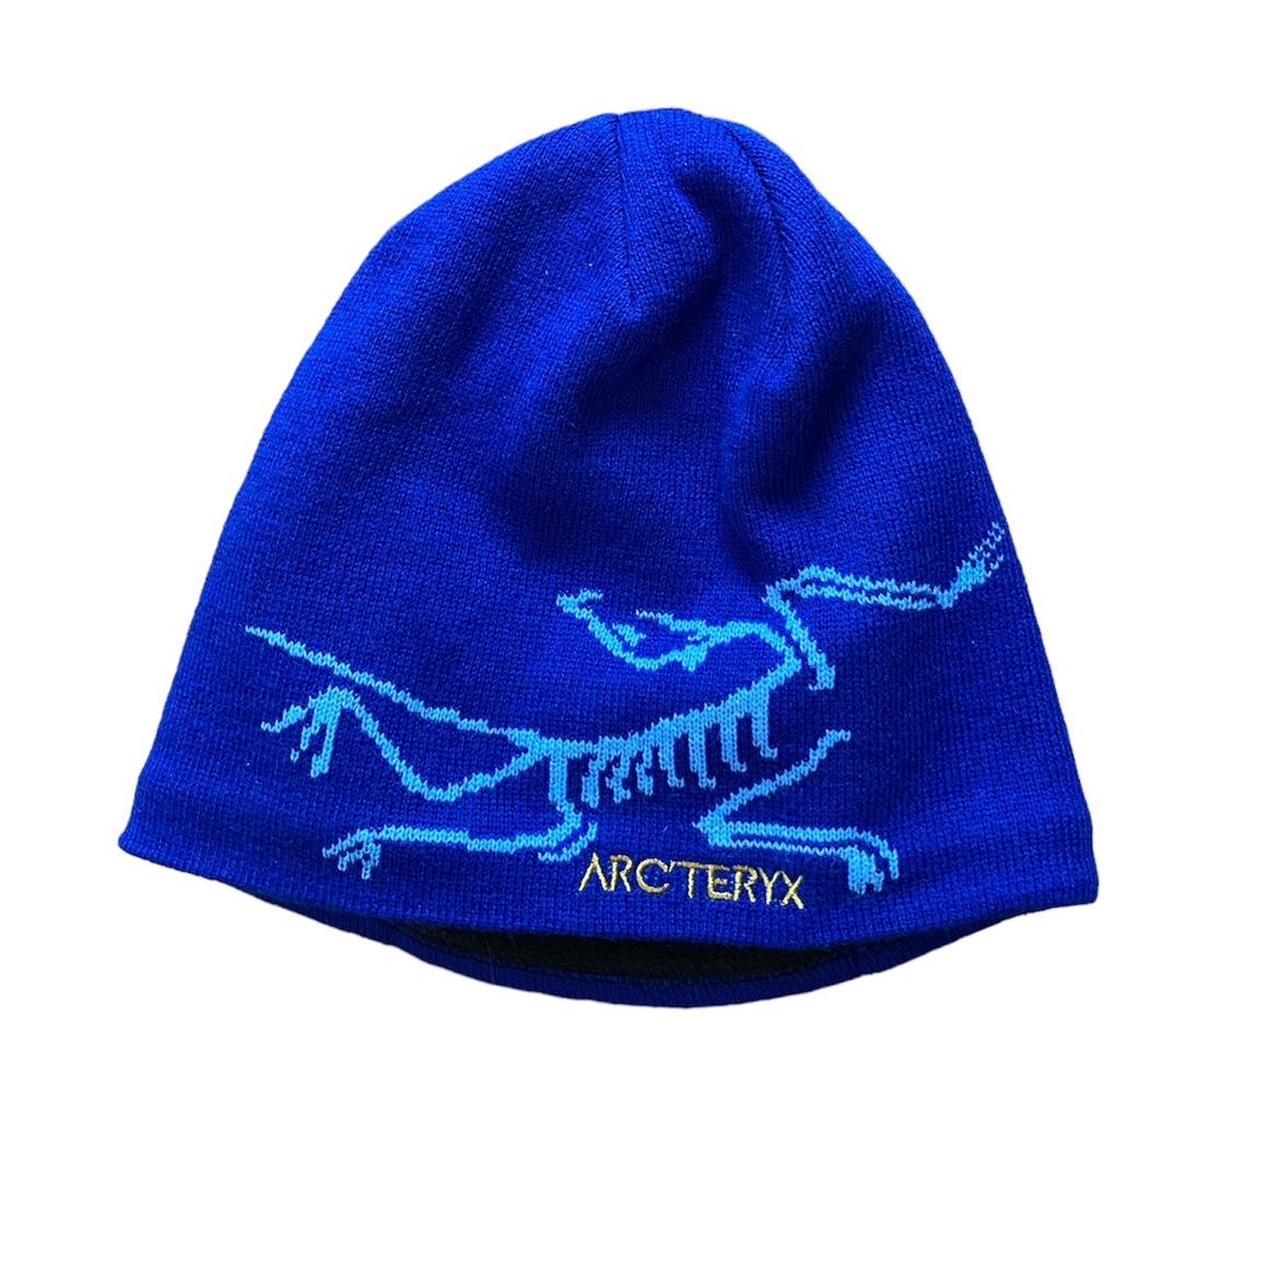 Arcteryx beanie Arcteryx hat Blue arcteryx hat - Depop